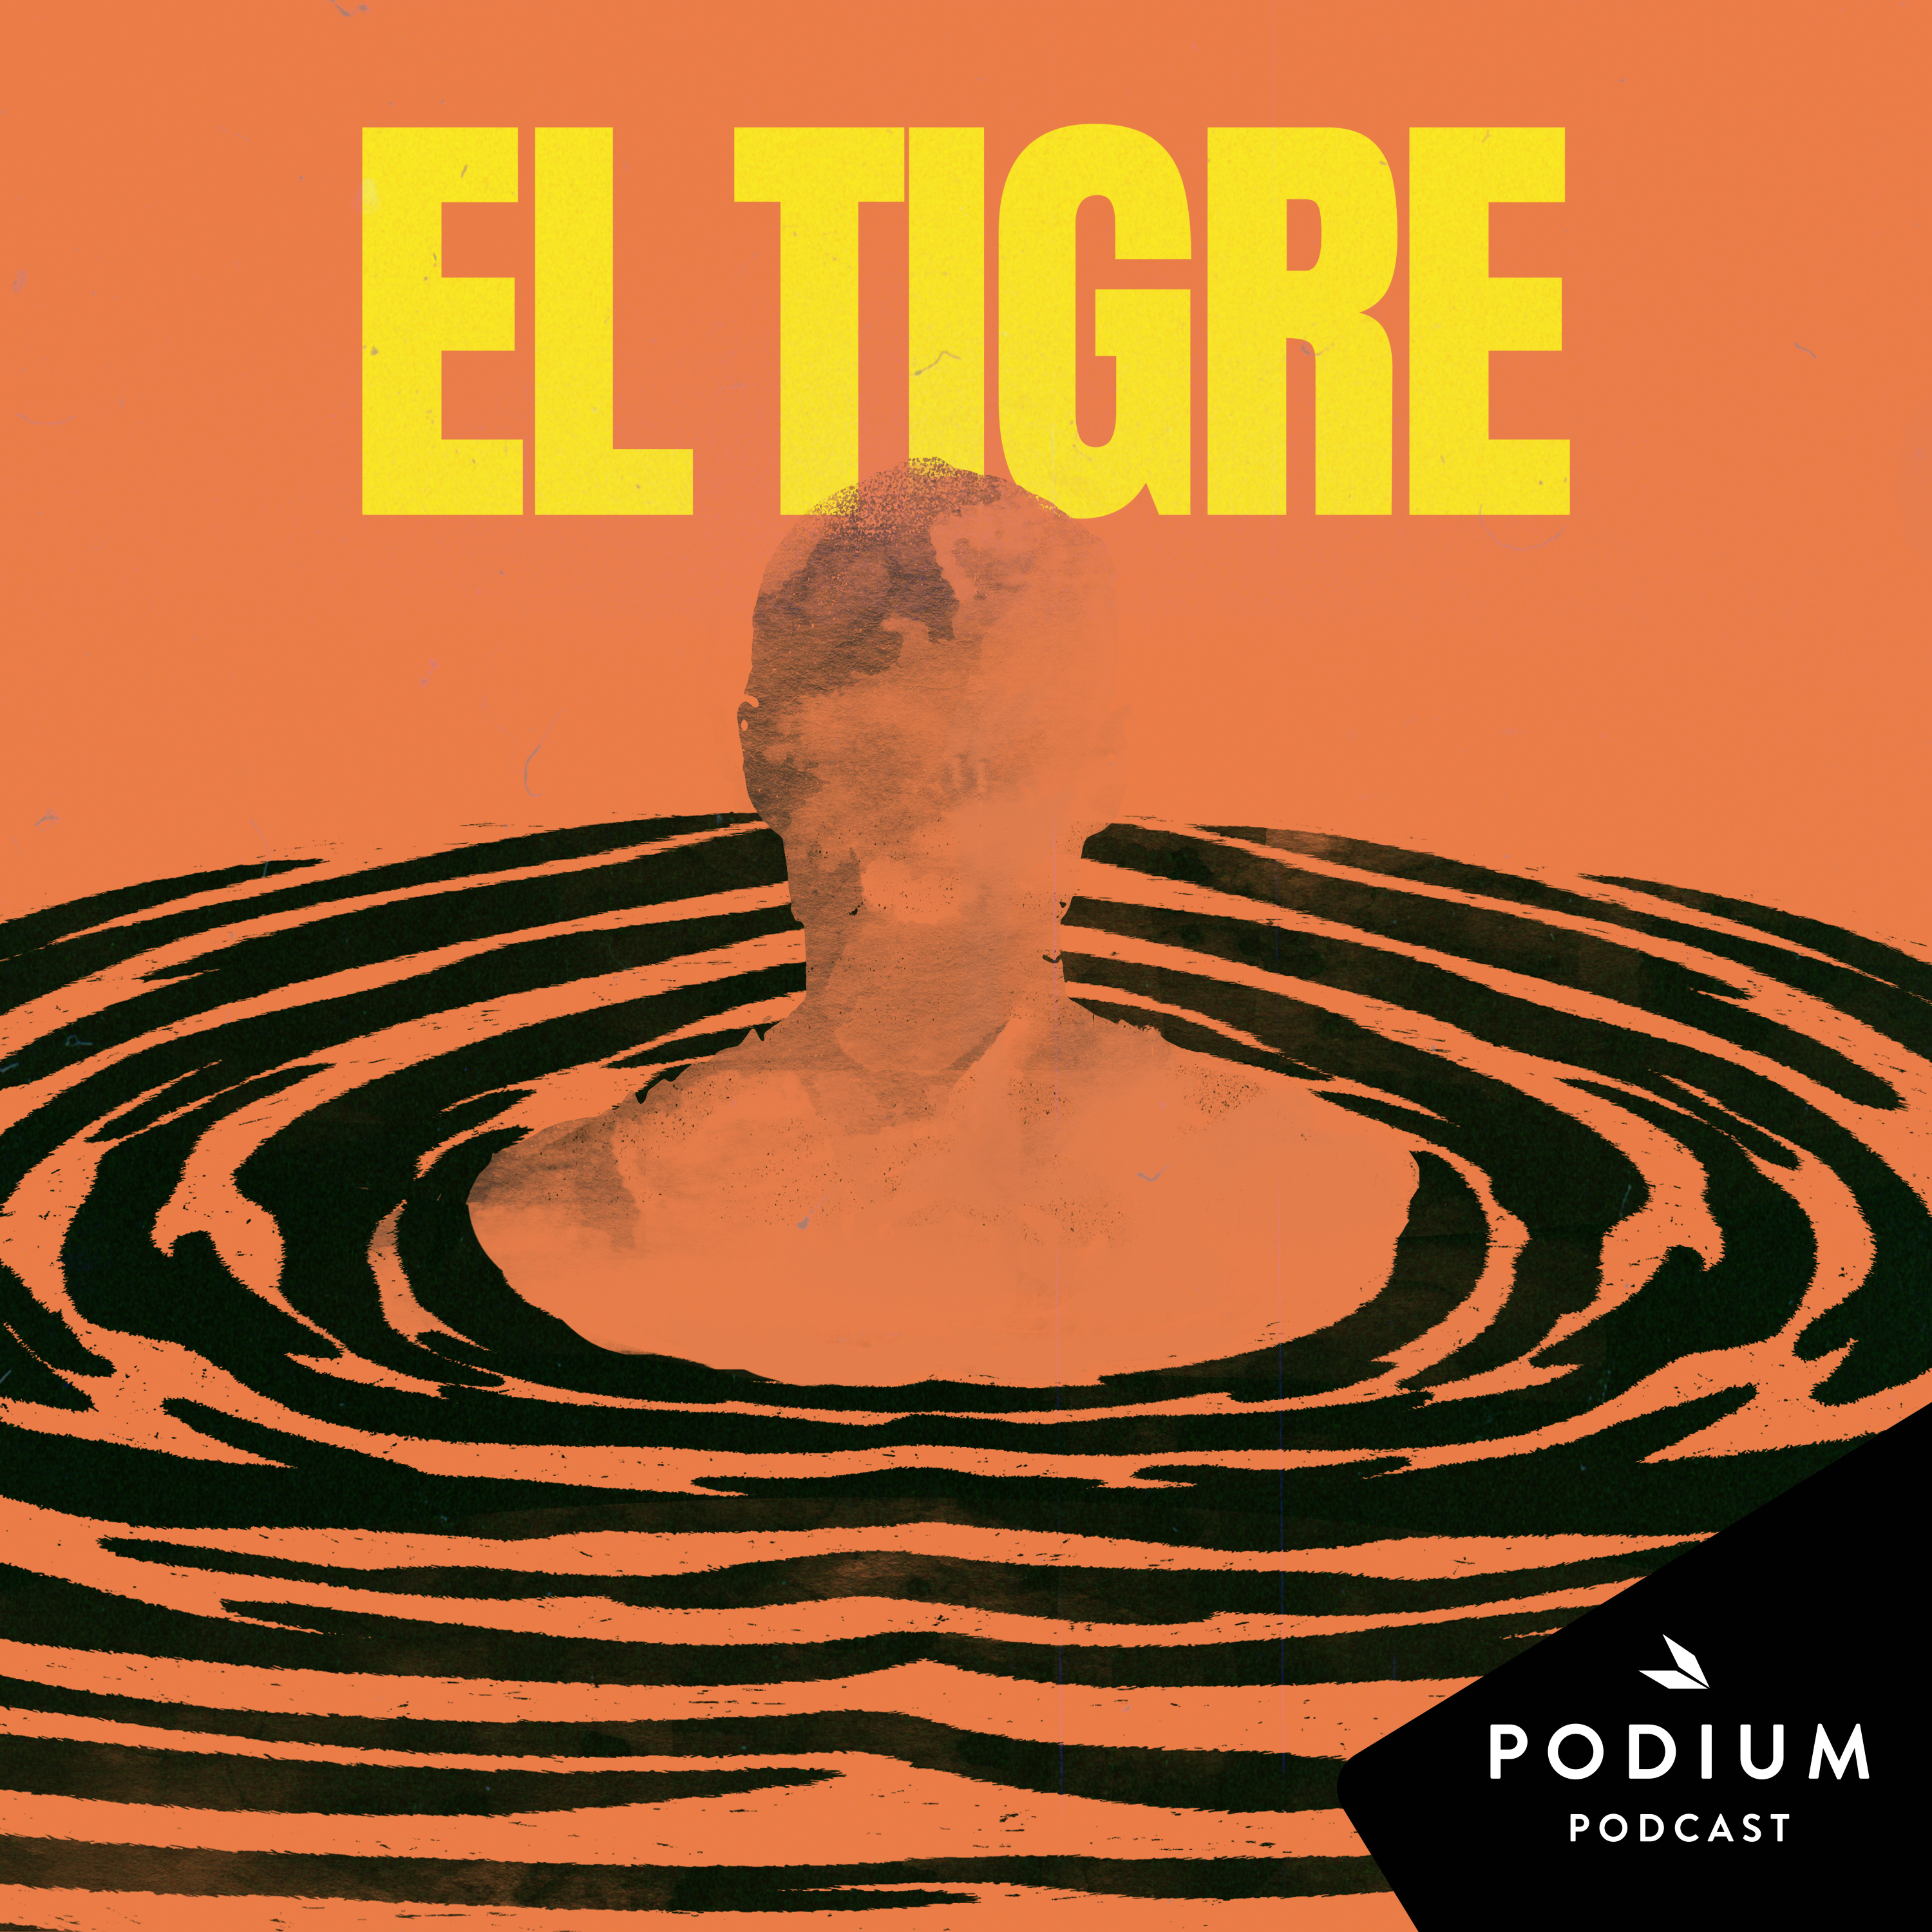 El tigre – Podium Podcast